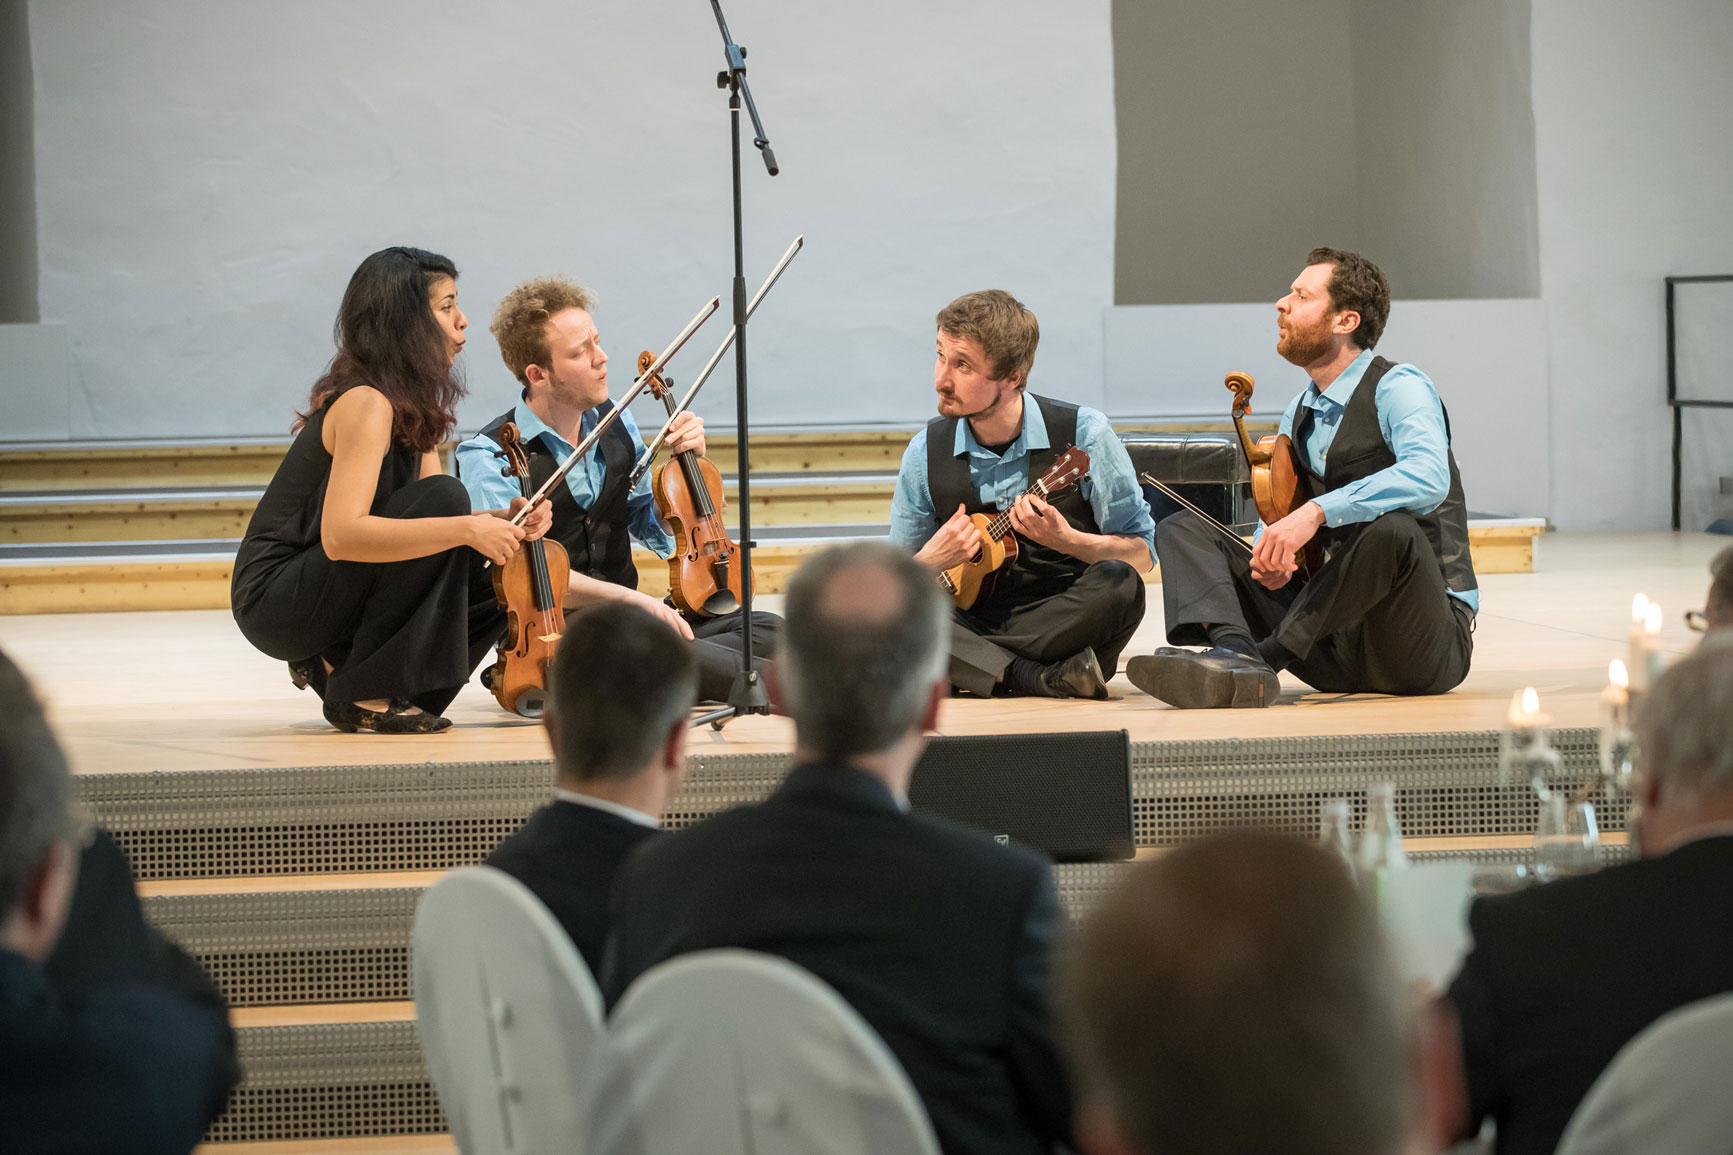 Feuerbach Quartett - Gruppenfoto beim spielen